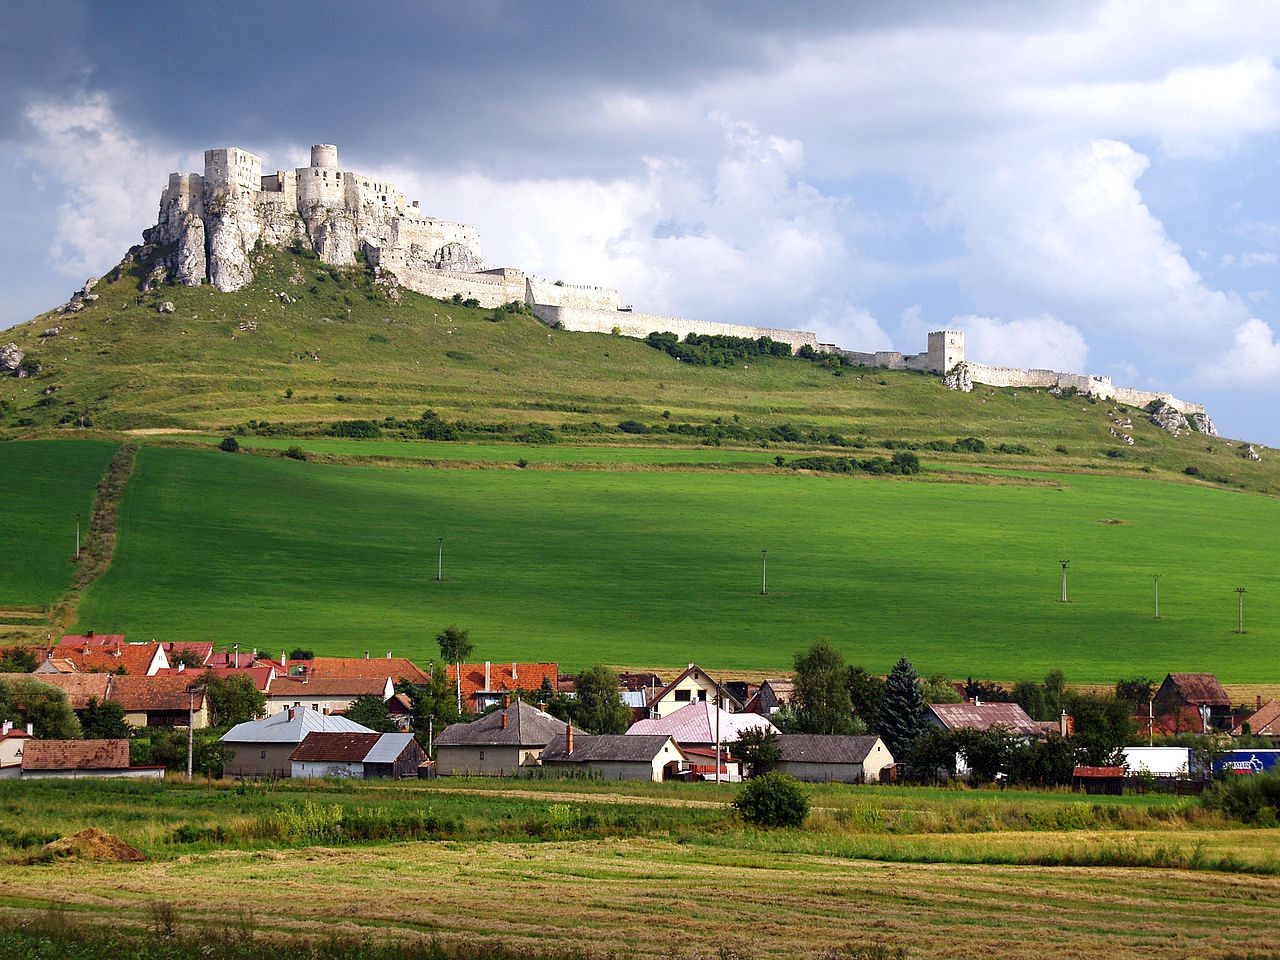 スロバキアの世界遺産「スピシュ城」とは